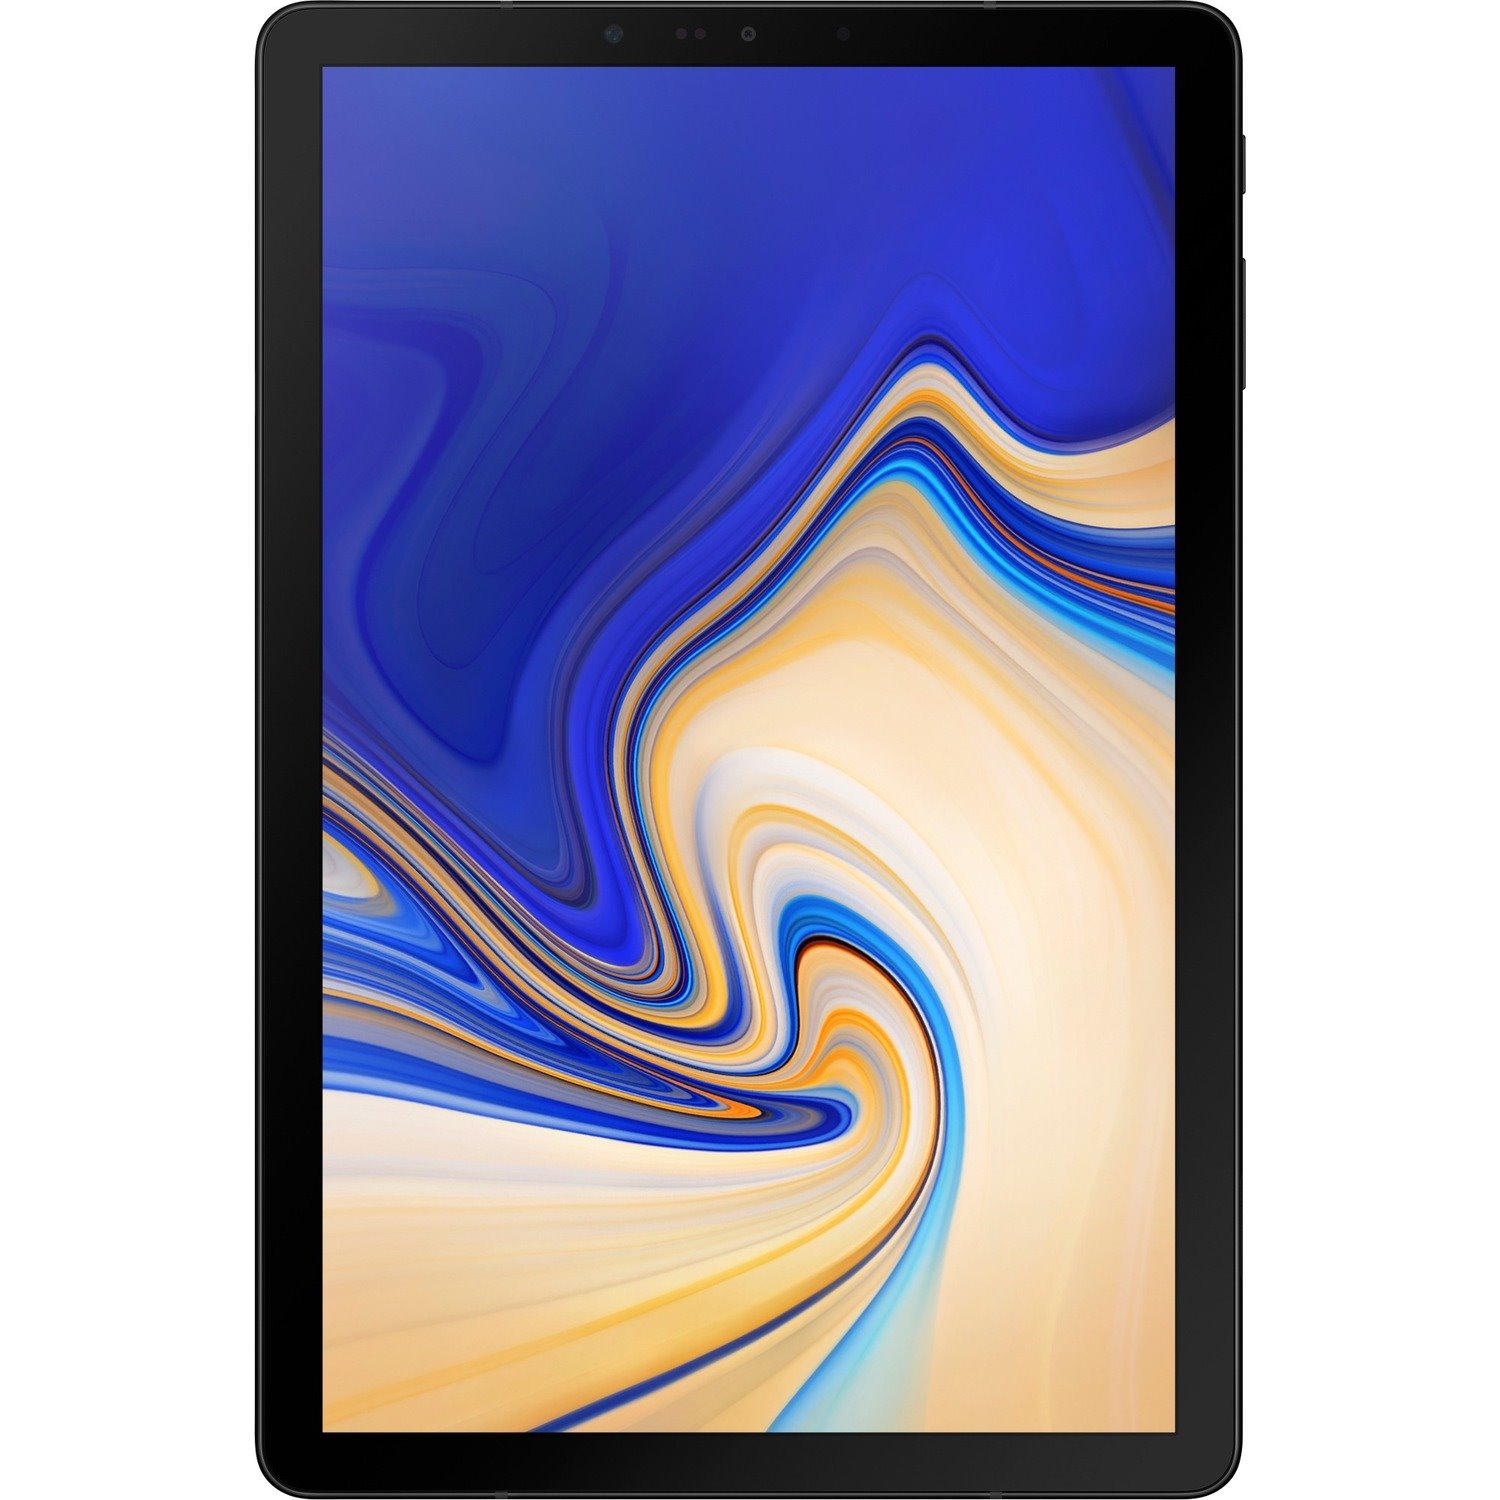 Samsung Galaxy Tab S4 SM-T830 Tablet - 10.5" - Qualcomm Snapdragon 835 - 4 GB - 64 GB Storage - Android 8.1 Oreo - Black